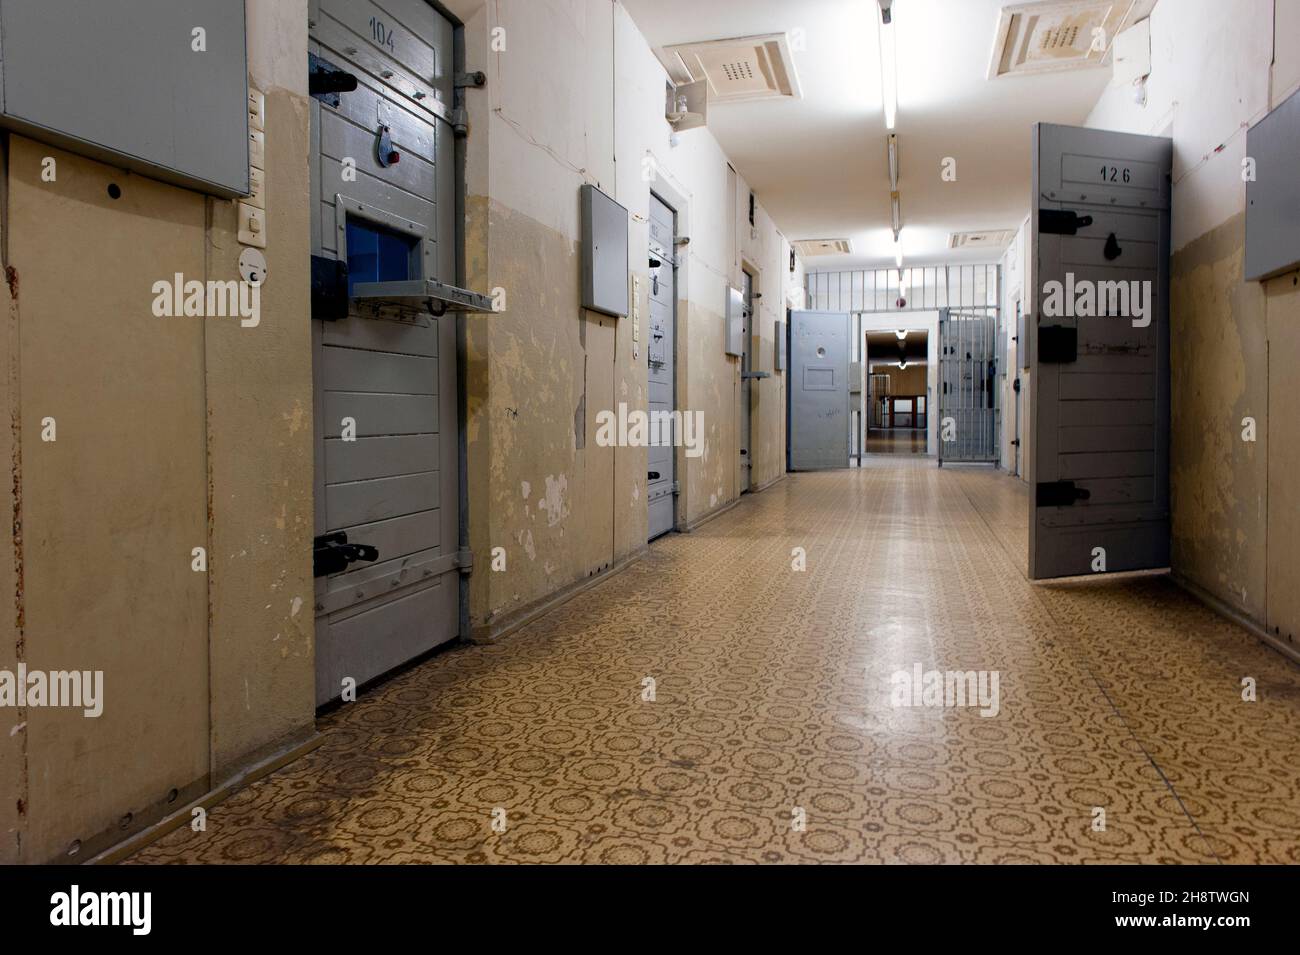 Berlin, Deutschland. Unterirdischer Korridor und Gefängniszellen im ehemaligen Stasi-Gefängnis, das von der DDR-Geheimpolizei genutzt wurde, wo Zivilisten und Kritiker des kommunistischen SED-Regimes als Gefangene und Opfer eines Resozialisierungsprogramms eingesetzt wurden. Stockfoto